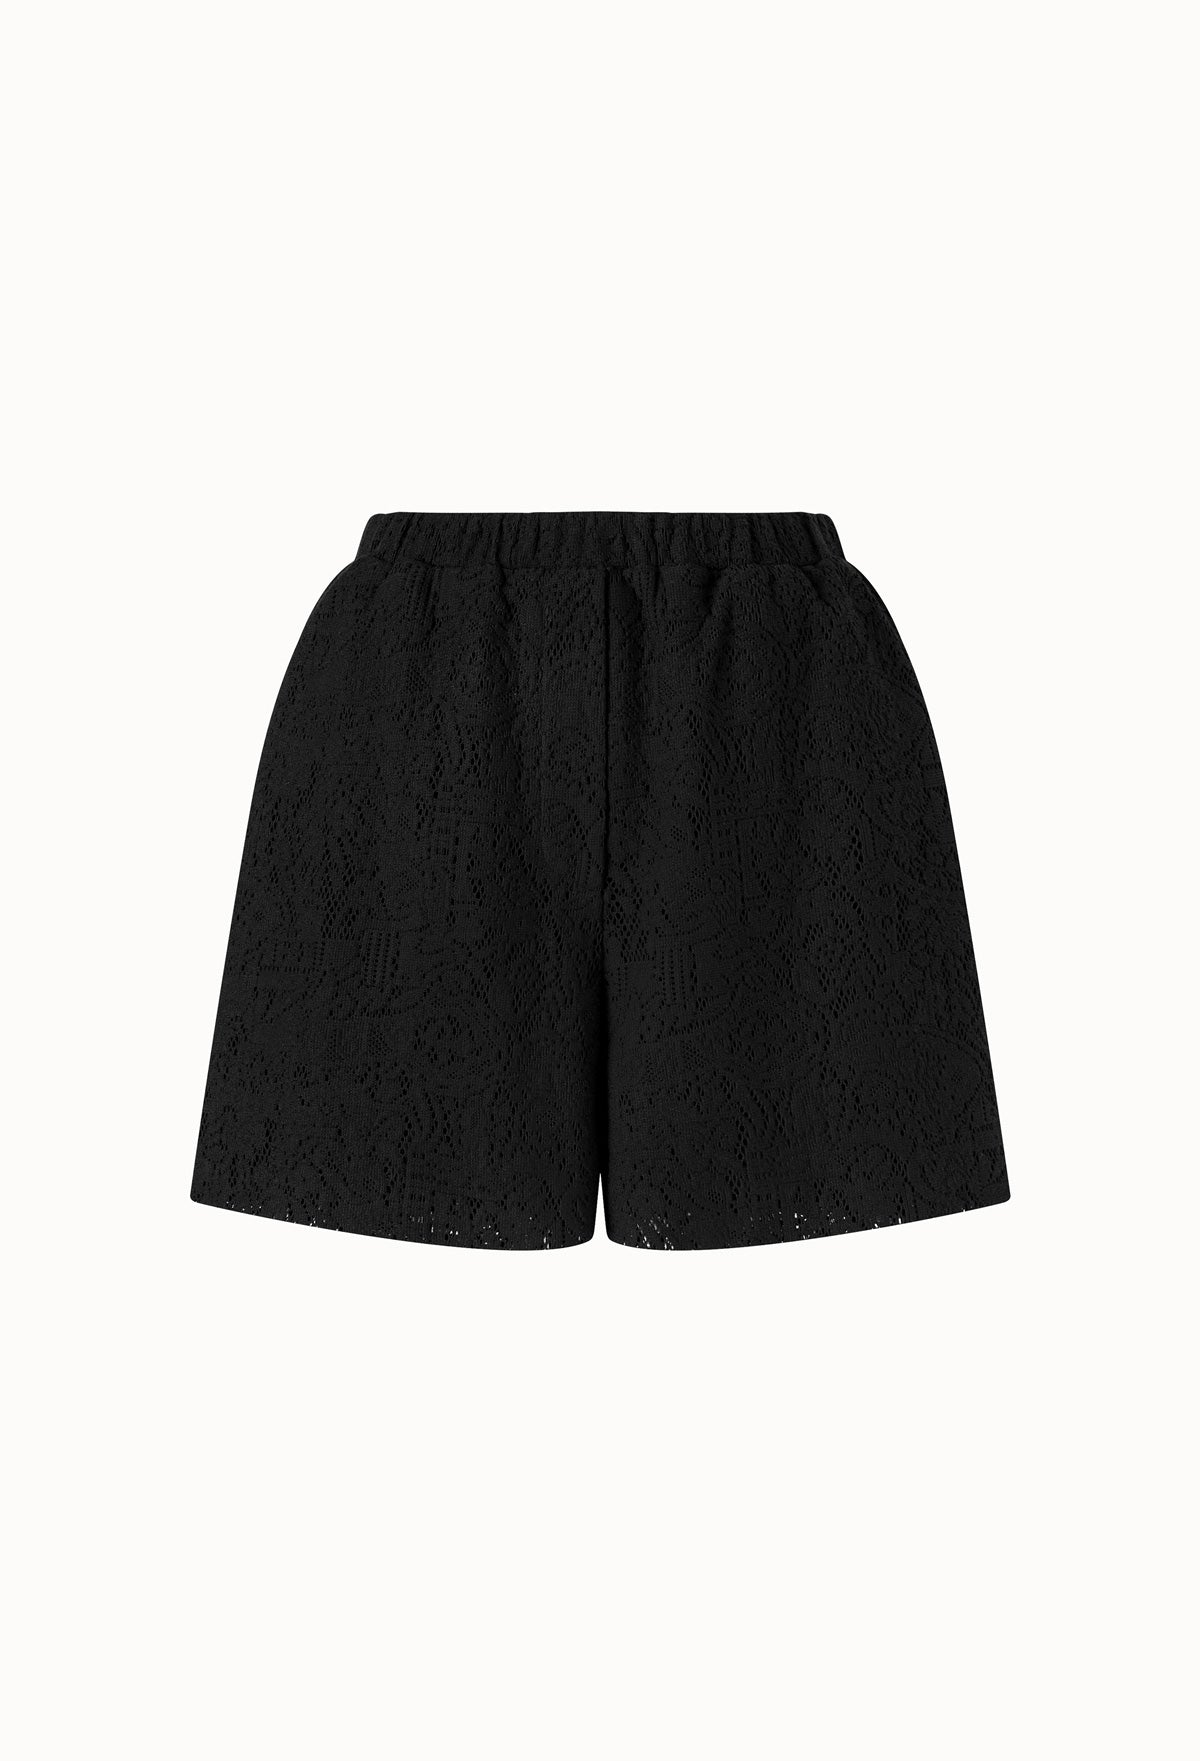 Shorts - STORiES Hong Kong